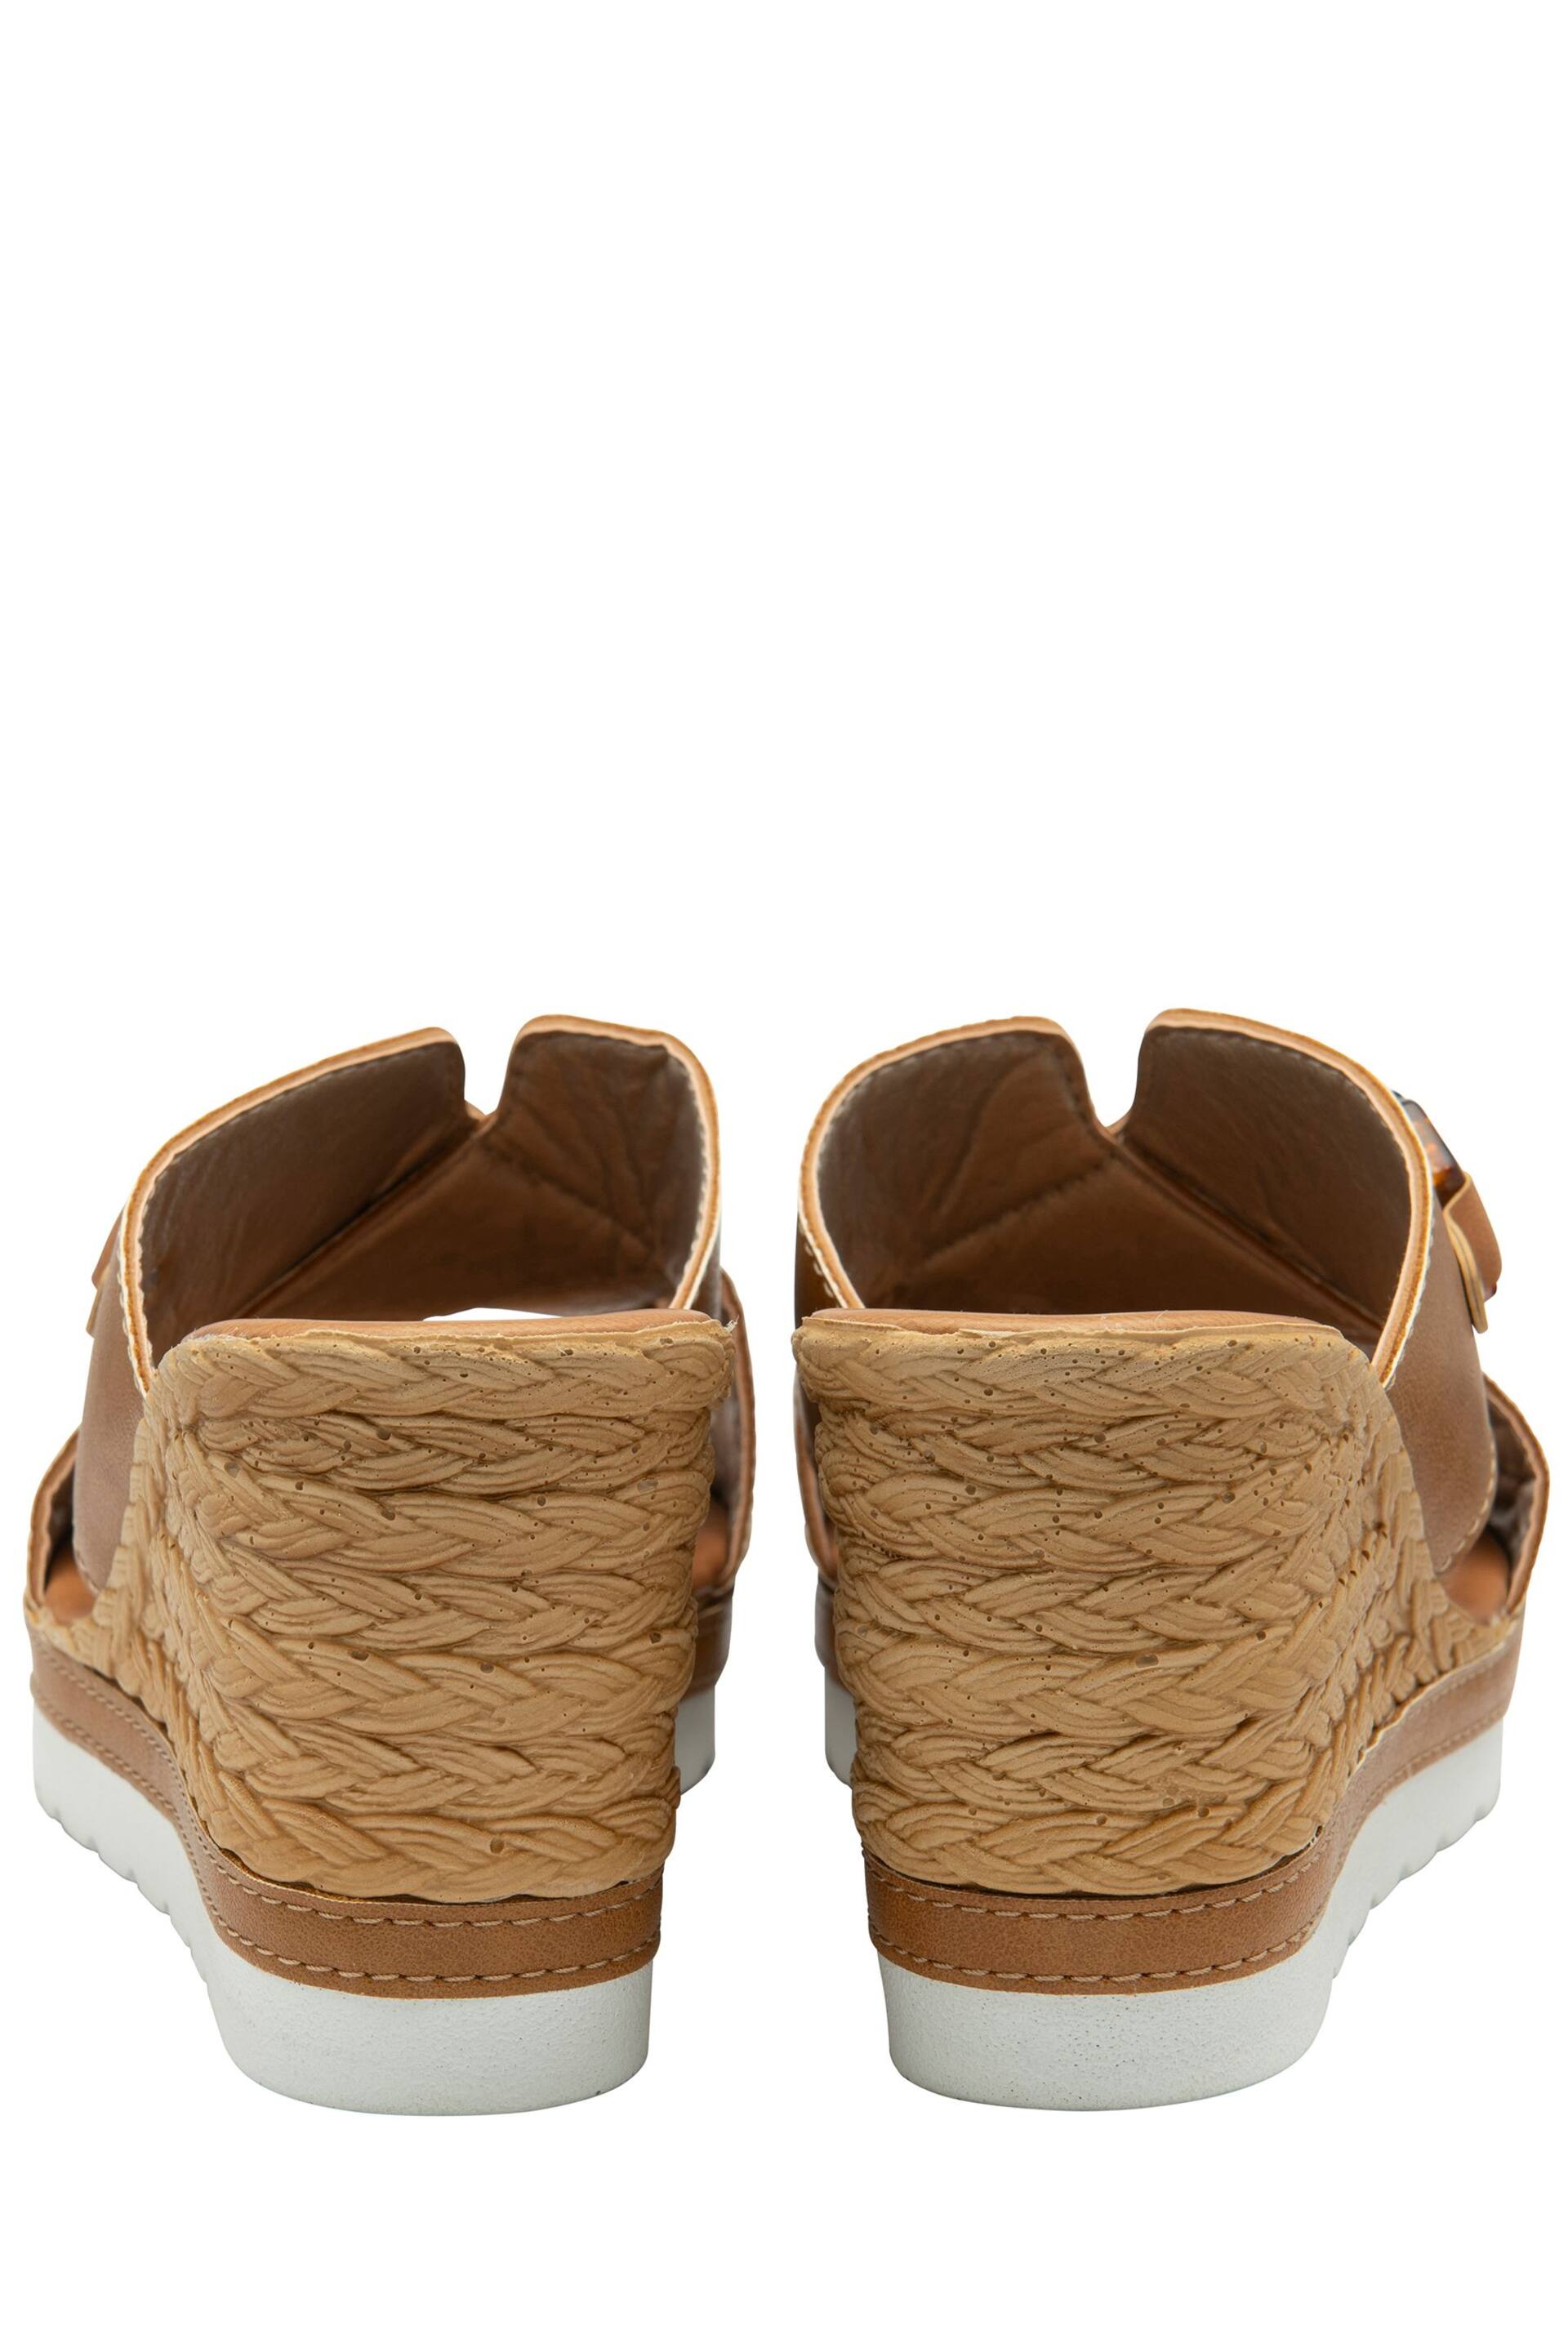 Lotus Brown Casual Wedge Mule Sandals - Image 3 of 4